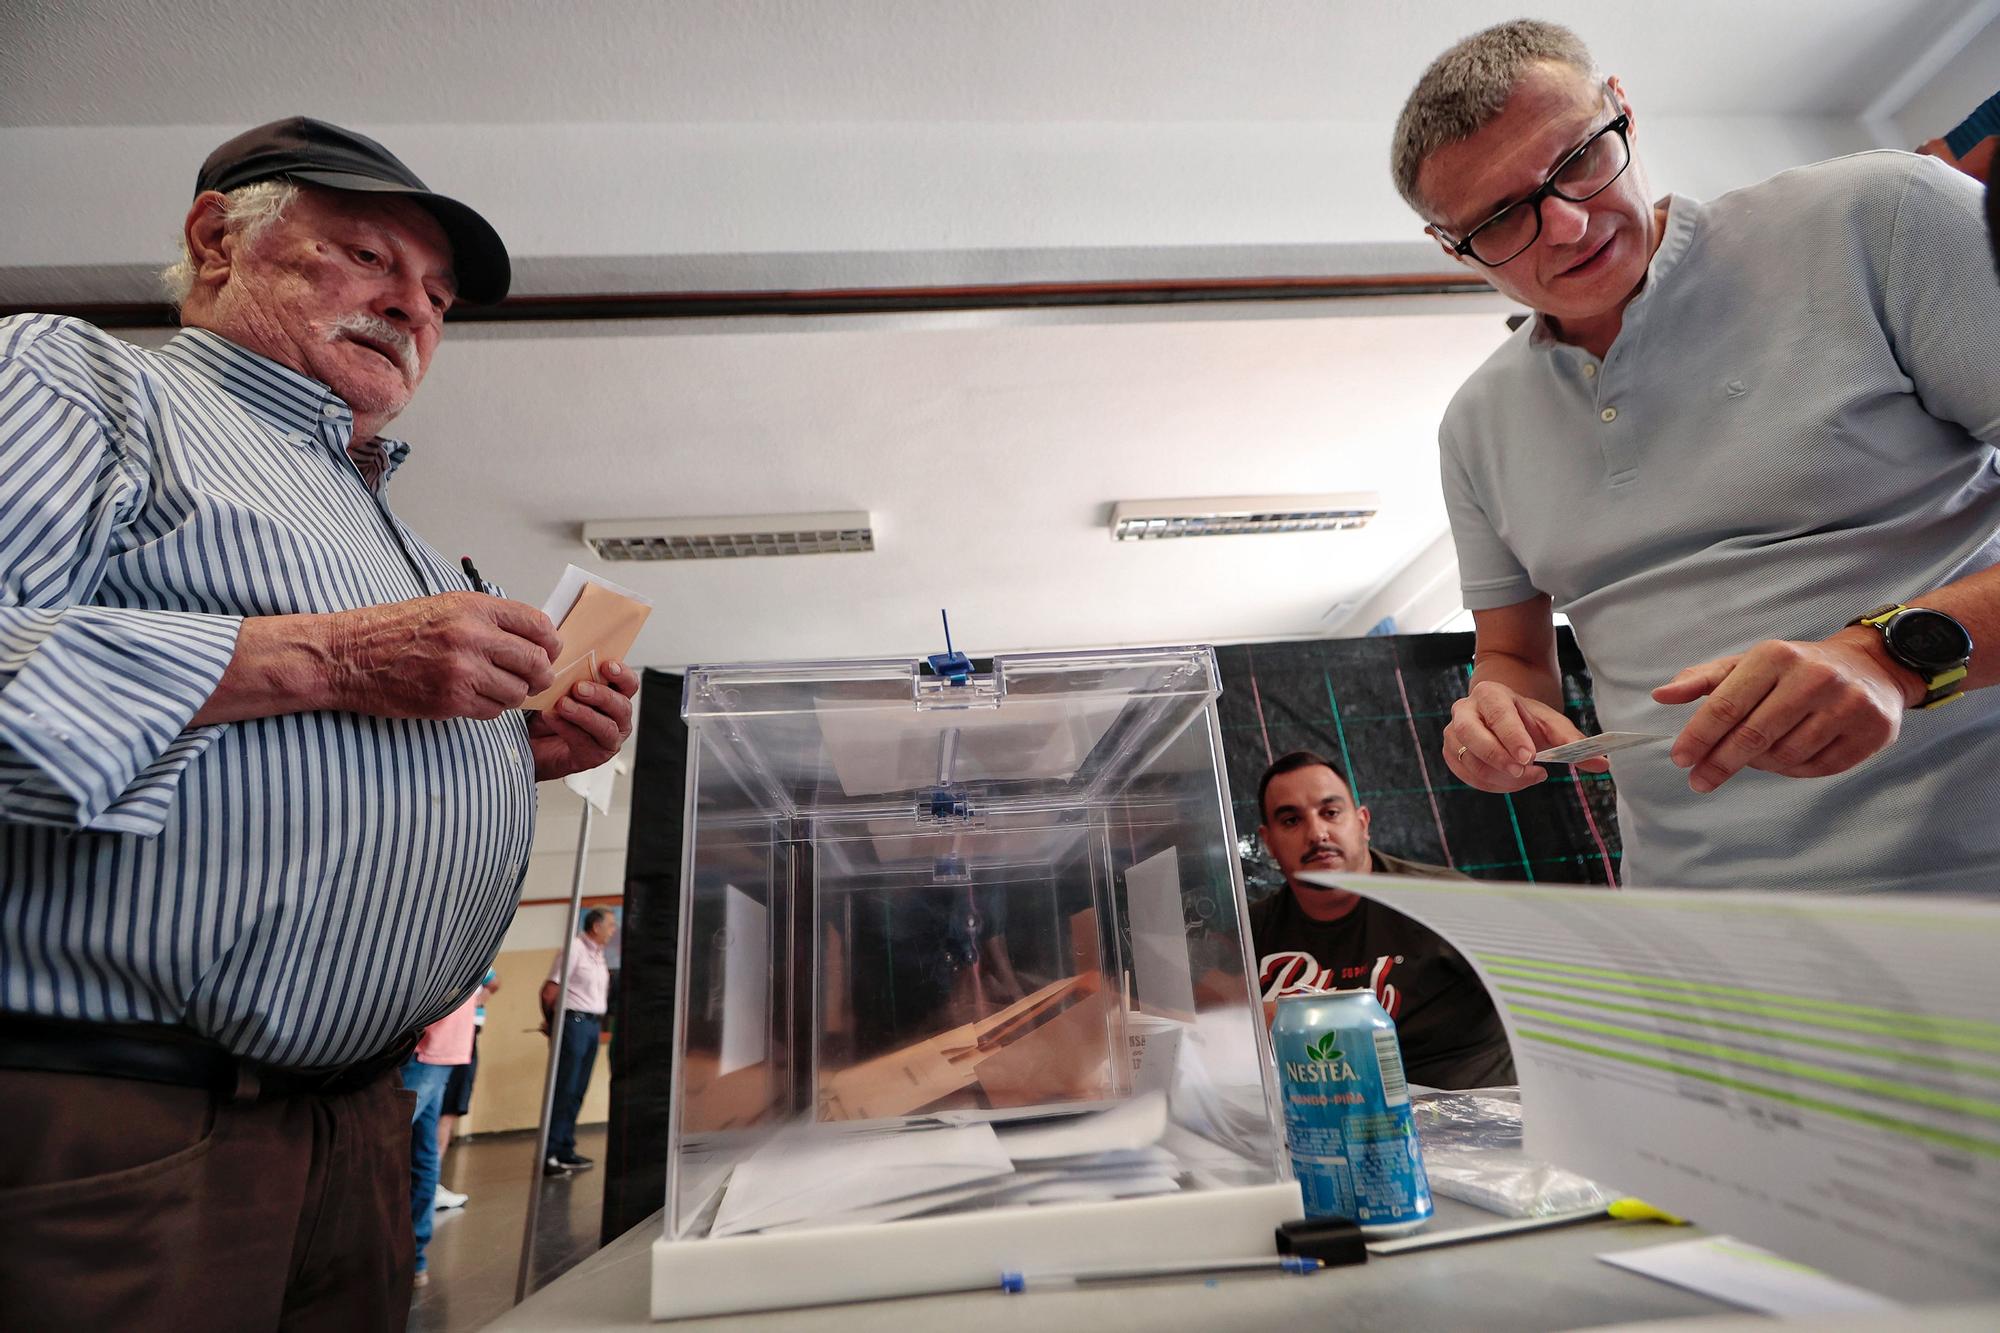 Ambiente de las jornada de elecciones generales del 23J en Tenerife